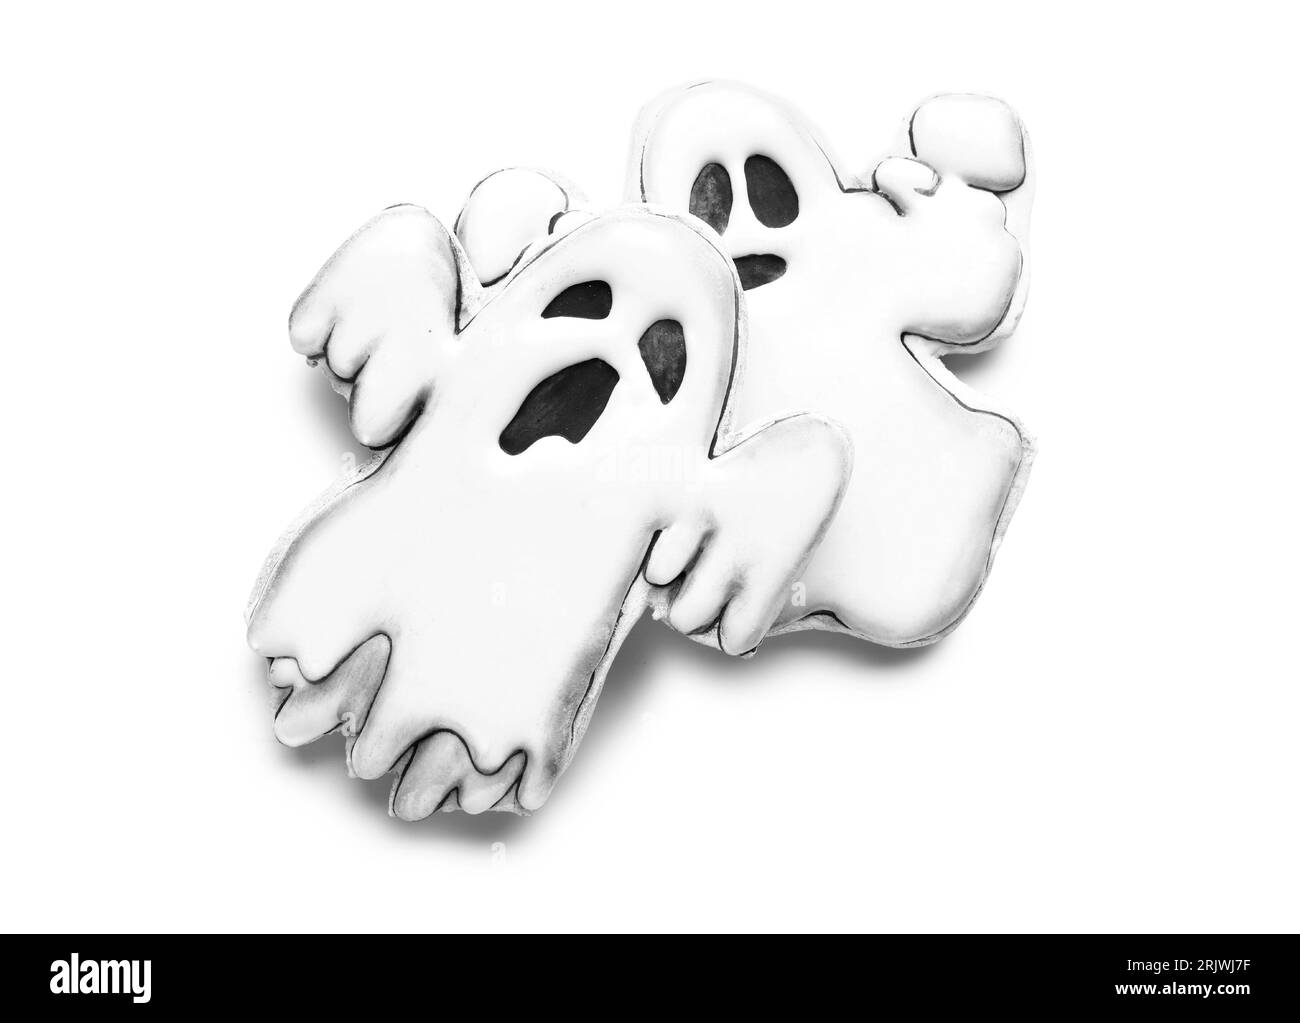 Leckere Kekse in Form von Geistern für Halloween-Feierlichkeiten auf weißem Hintergrund Stockfoto